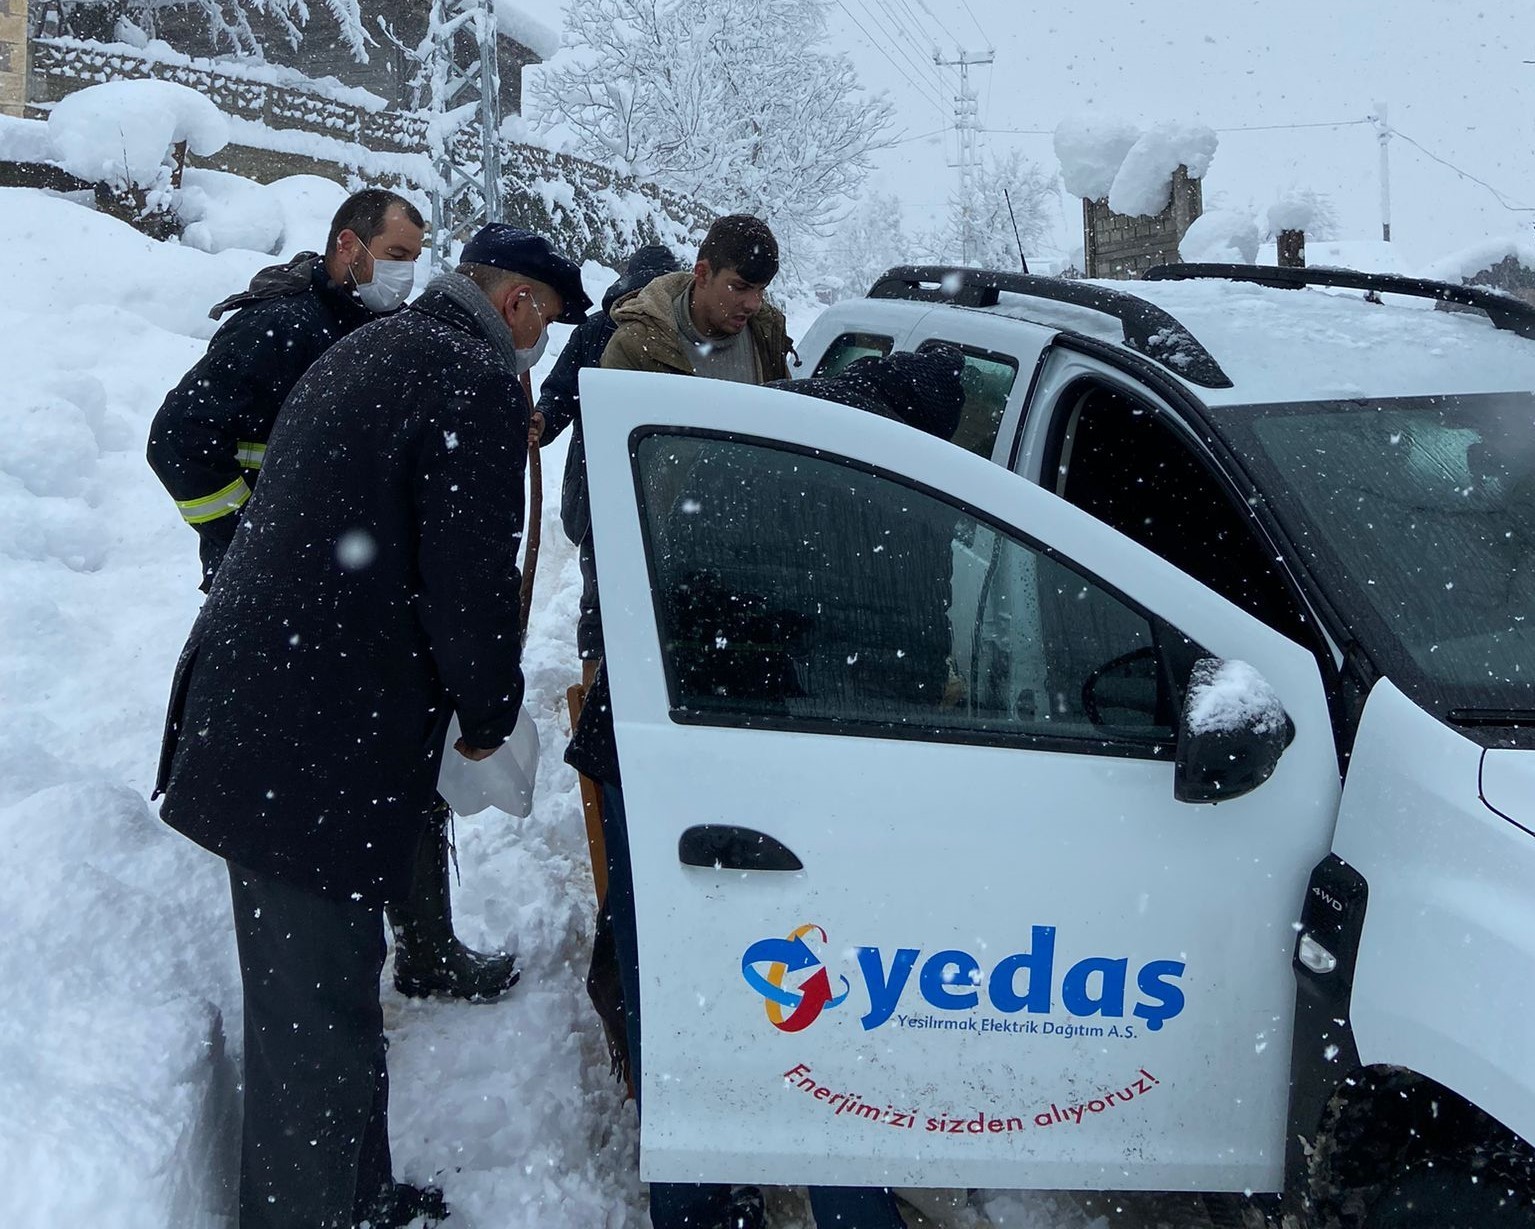 YEDAŞ ekipleri, karla kaplı yolda acil hasta için seferber oldu #ordu